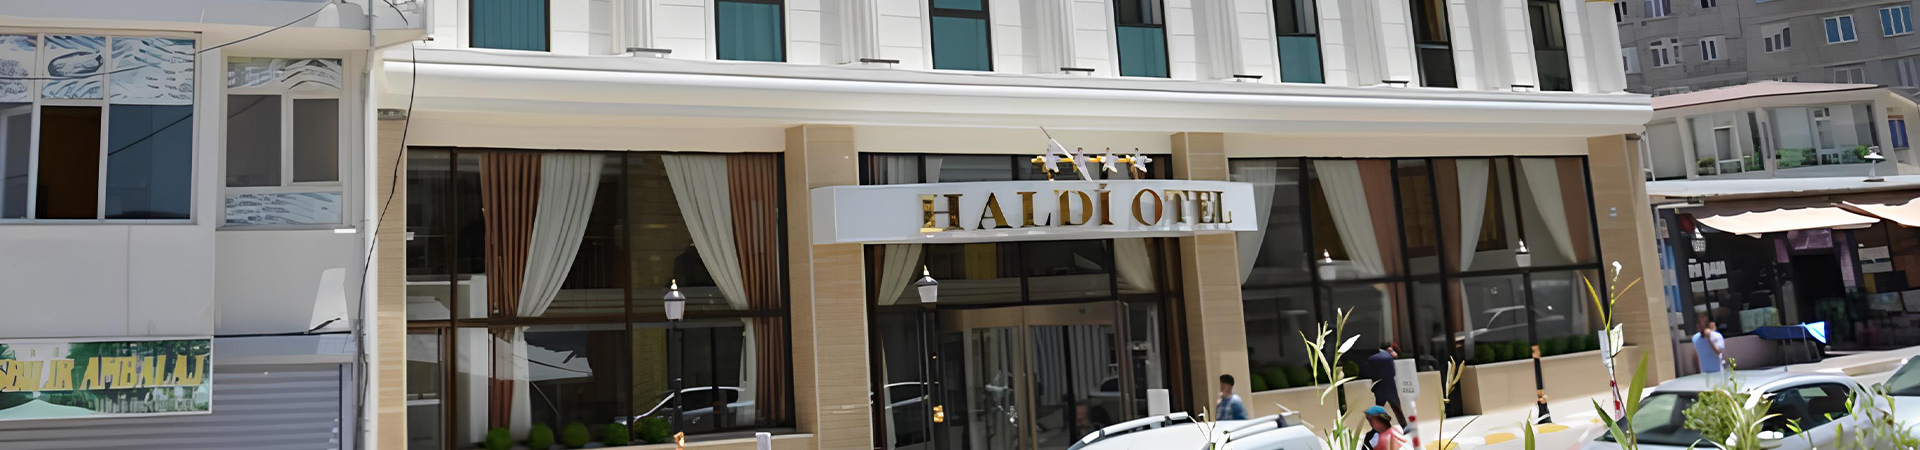 تور وان هتل هالدی